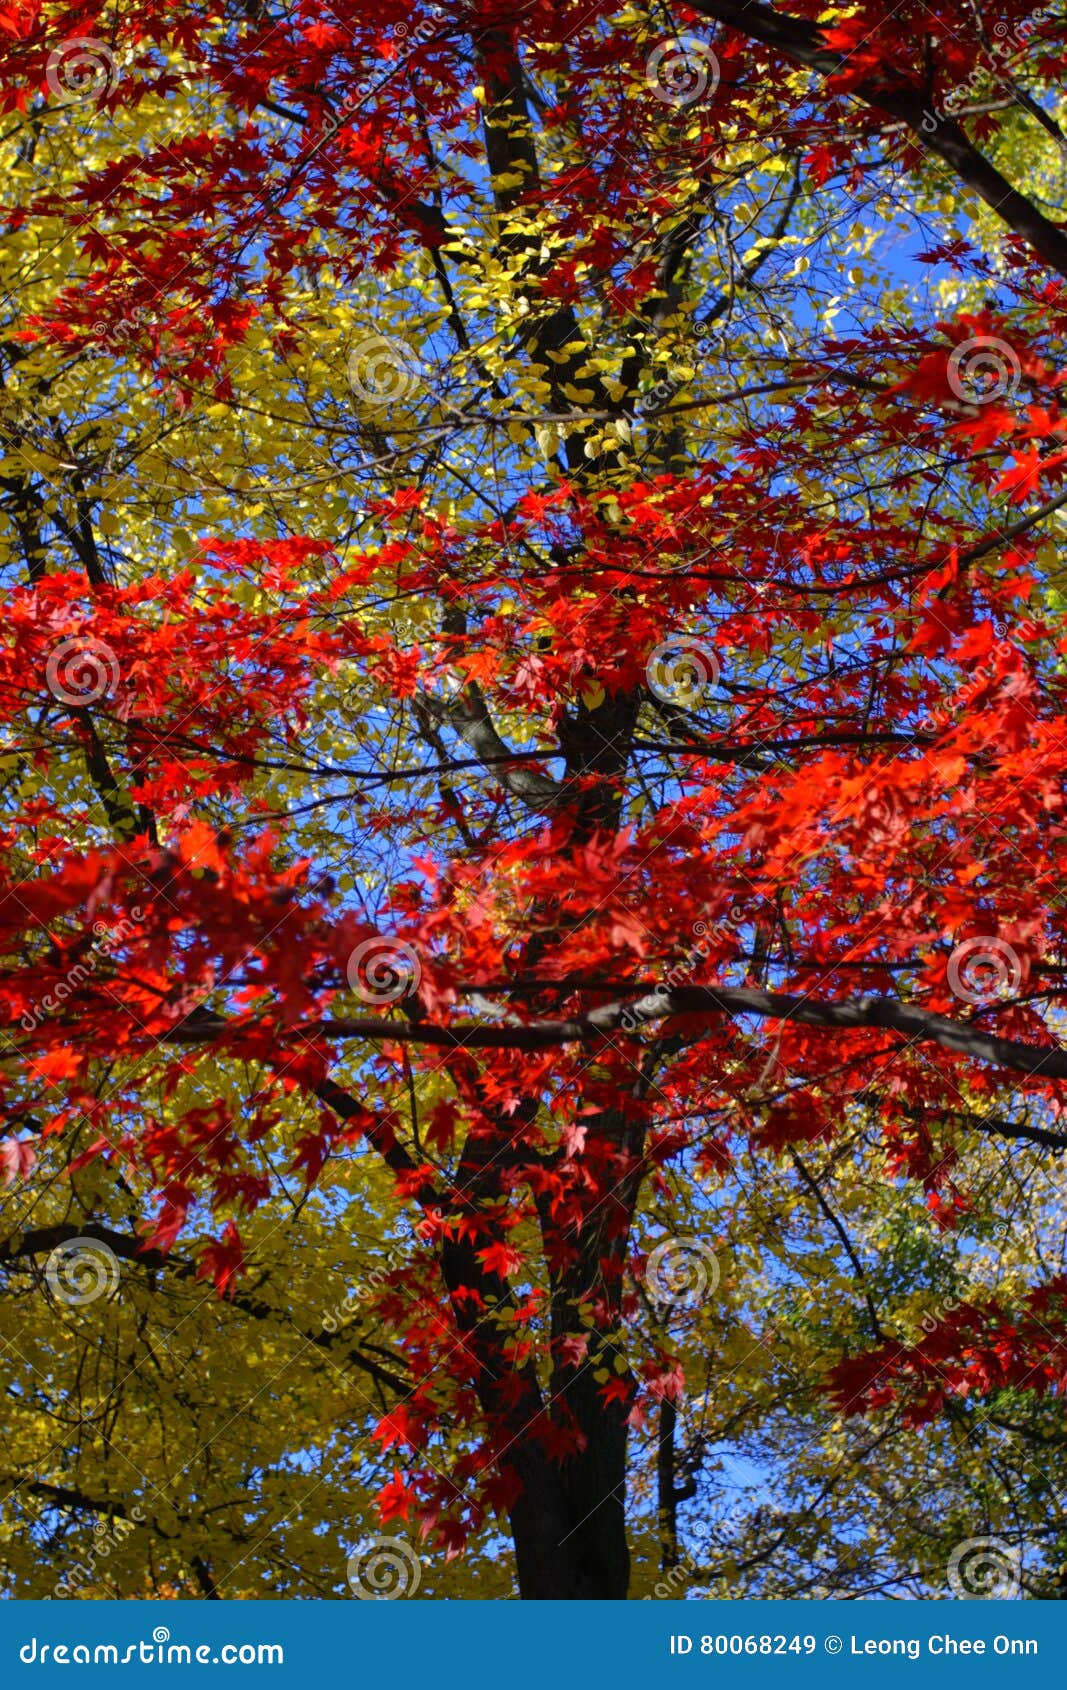 Stock Image Of Fall Foliage At Boston Stock Image Image Of Natural